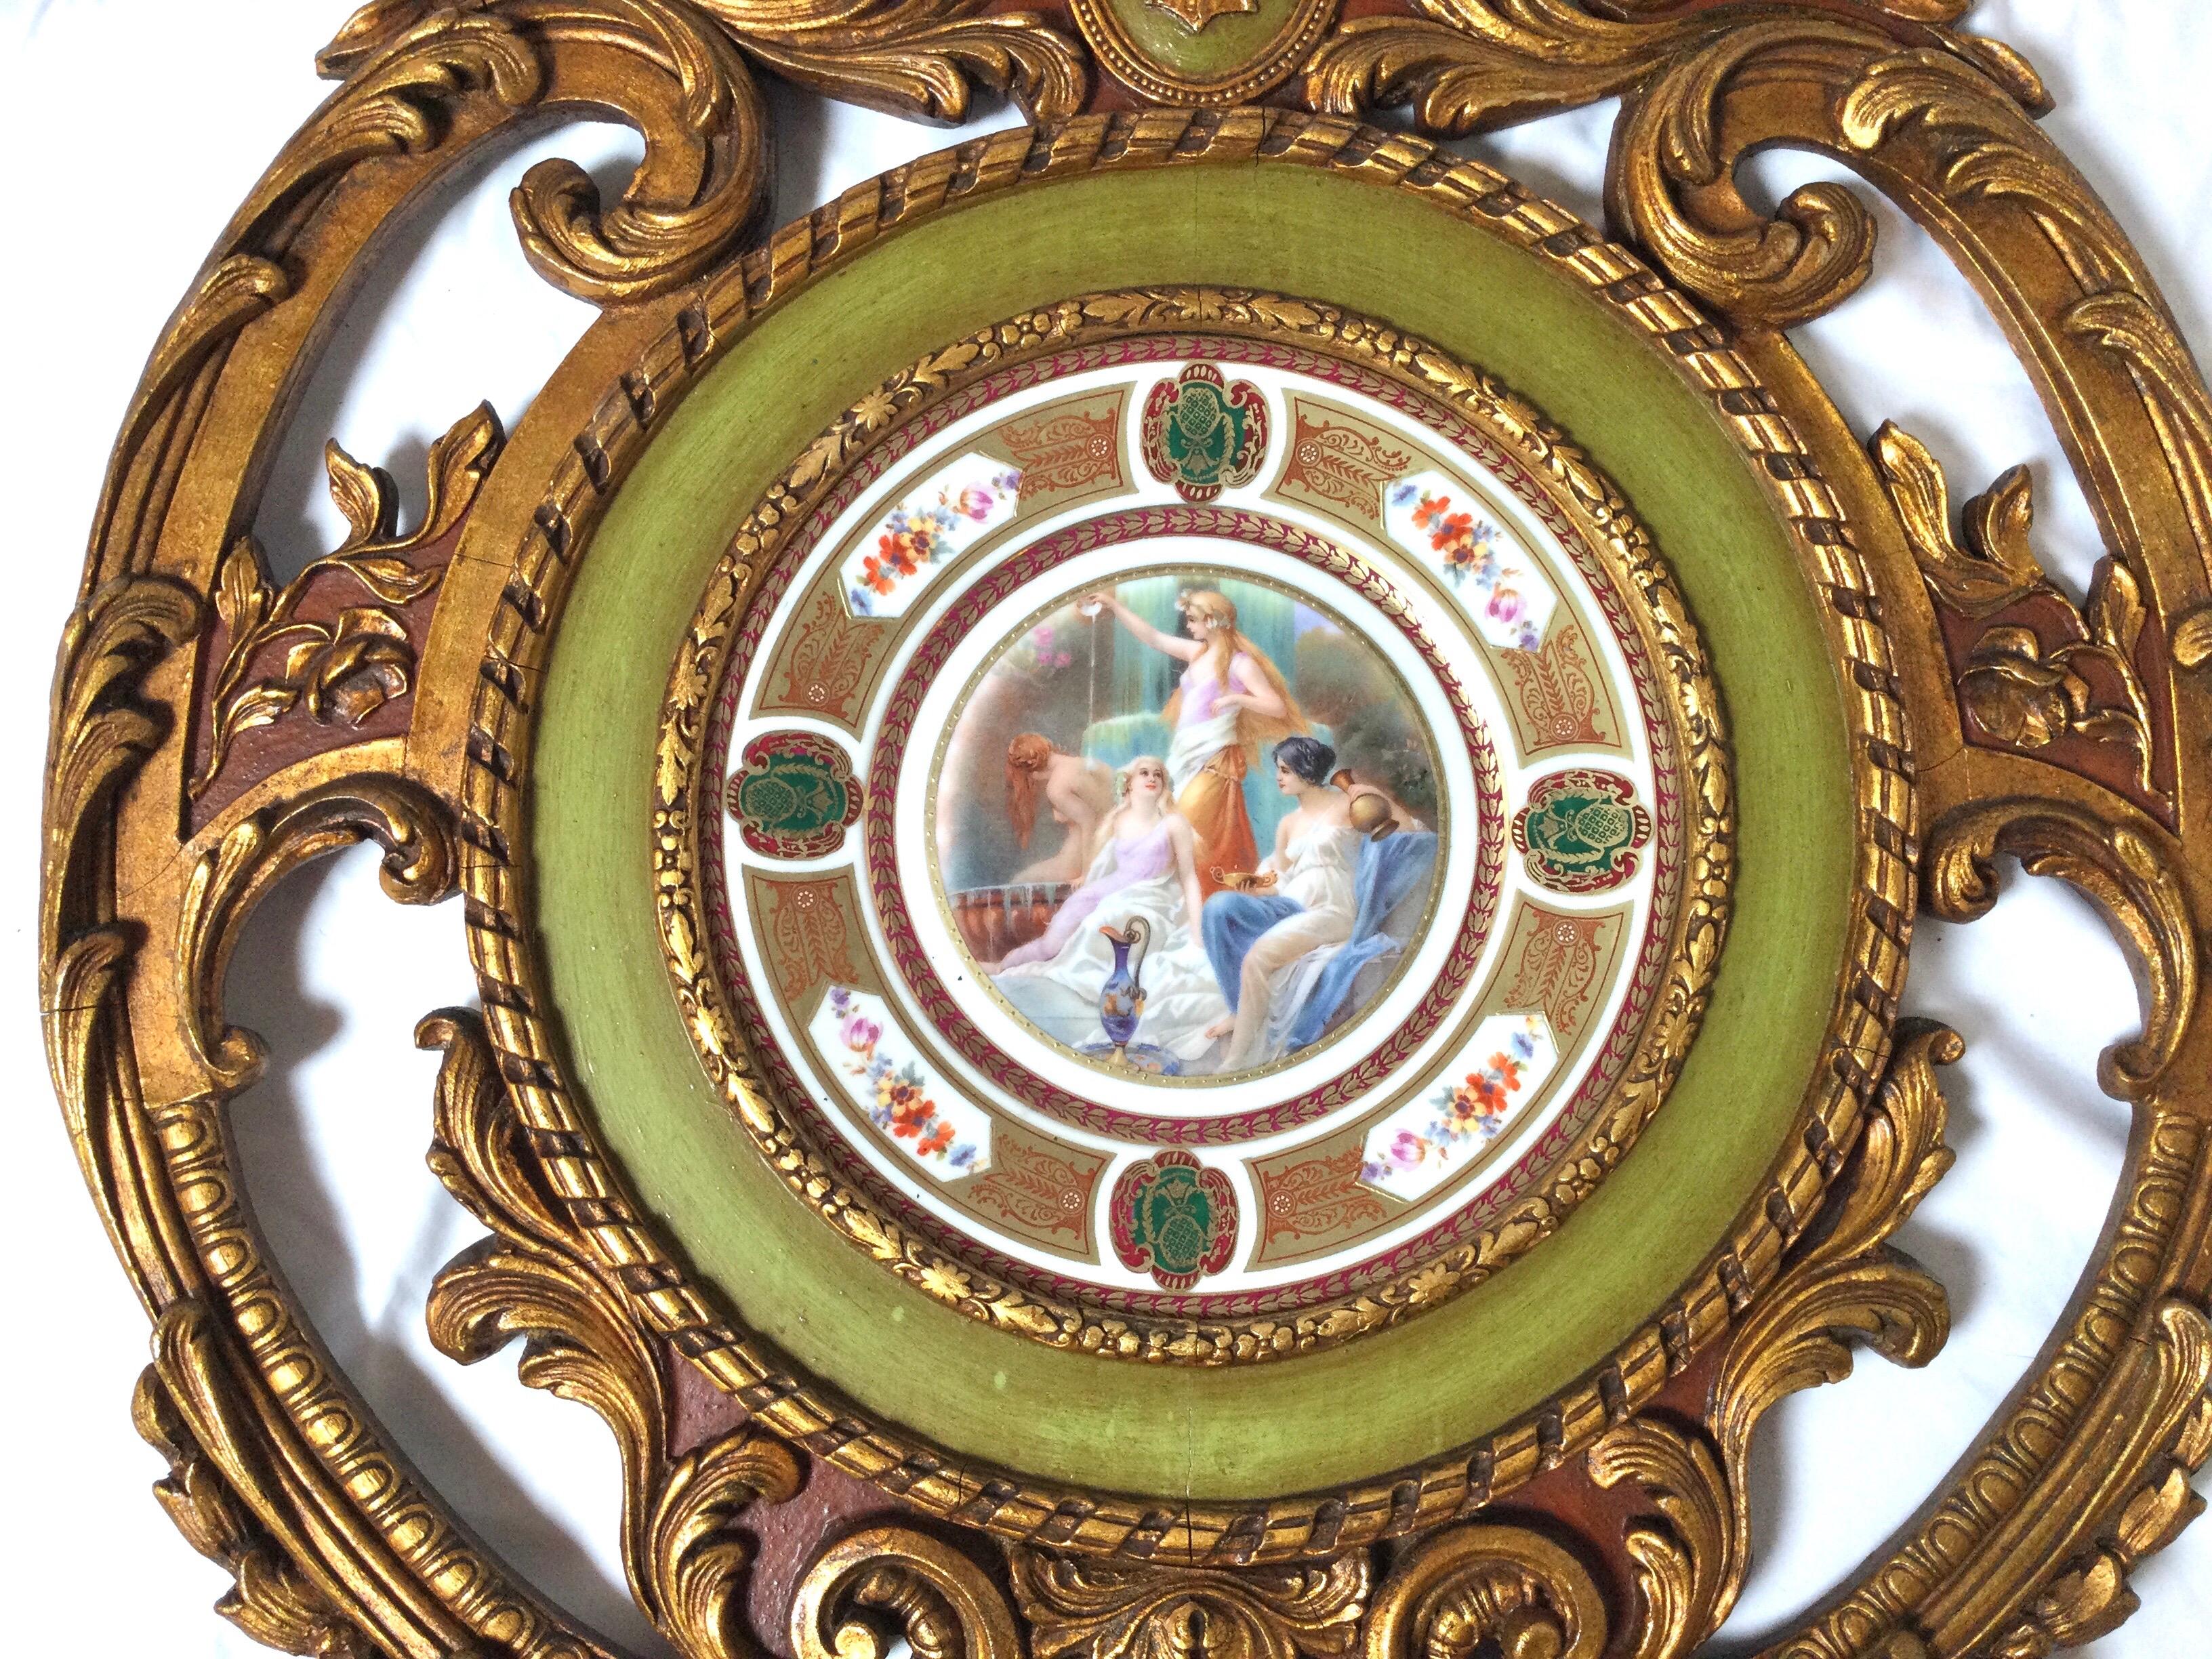 Elegante assiette de style néoclassique aux couleurs vibrantes avec un cadre élaboré en bois doré réticulé et polychromé. L'assiette avec trois jeunes filles au premier plan et une à l'arrière-plan en train de se baigner.